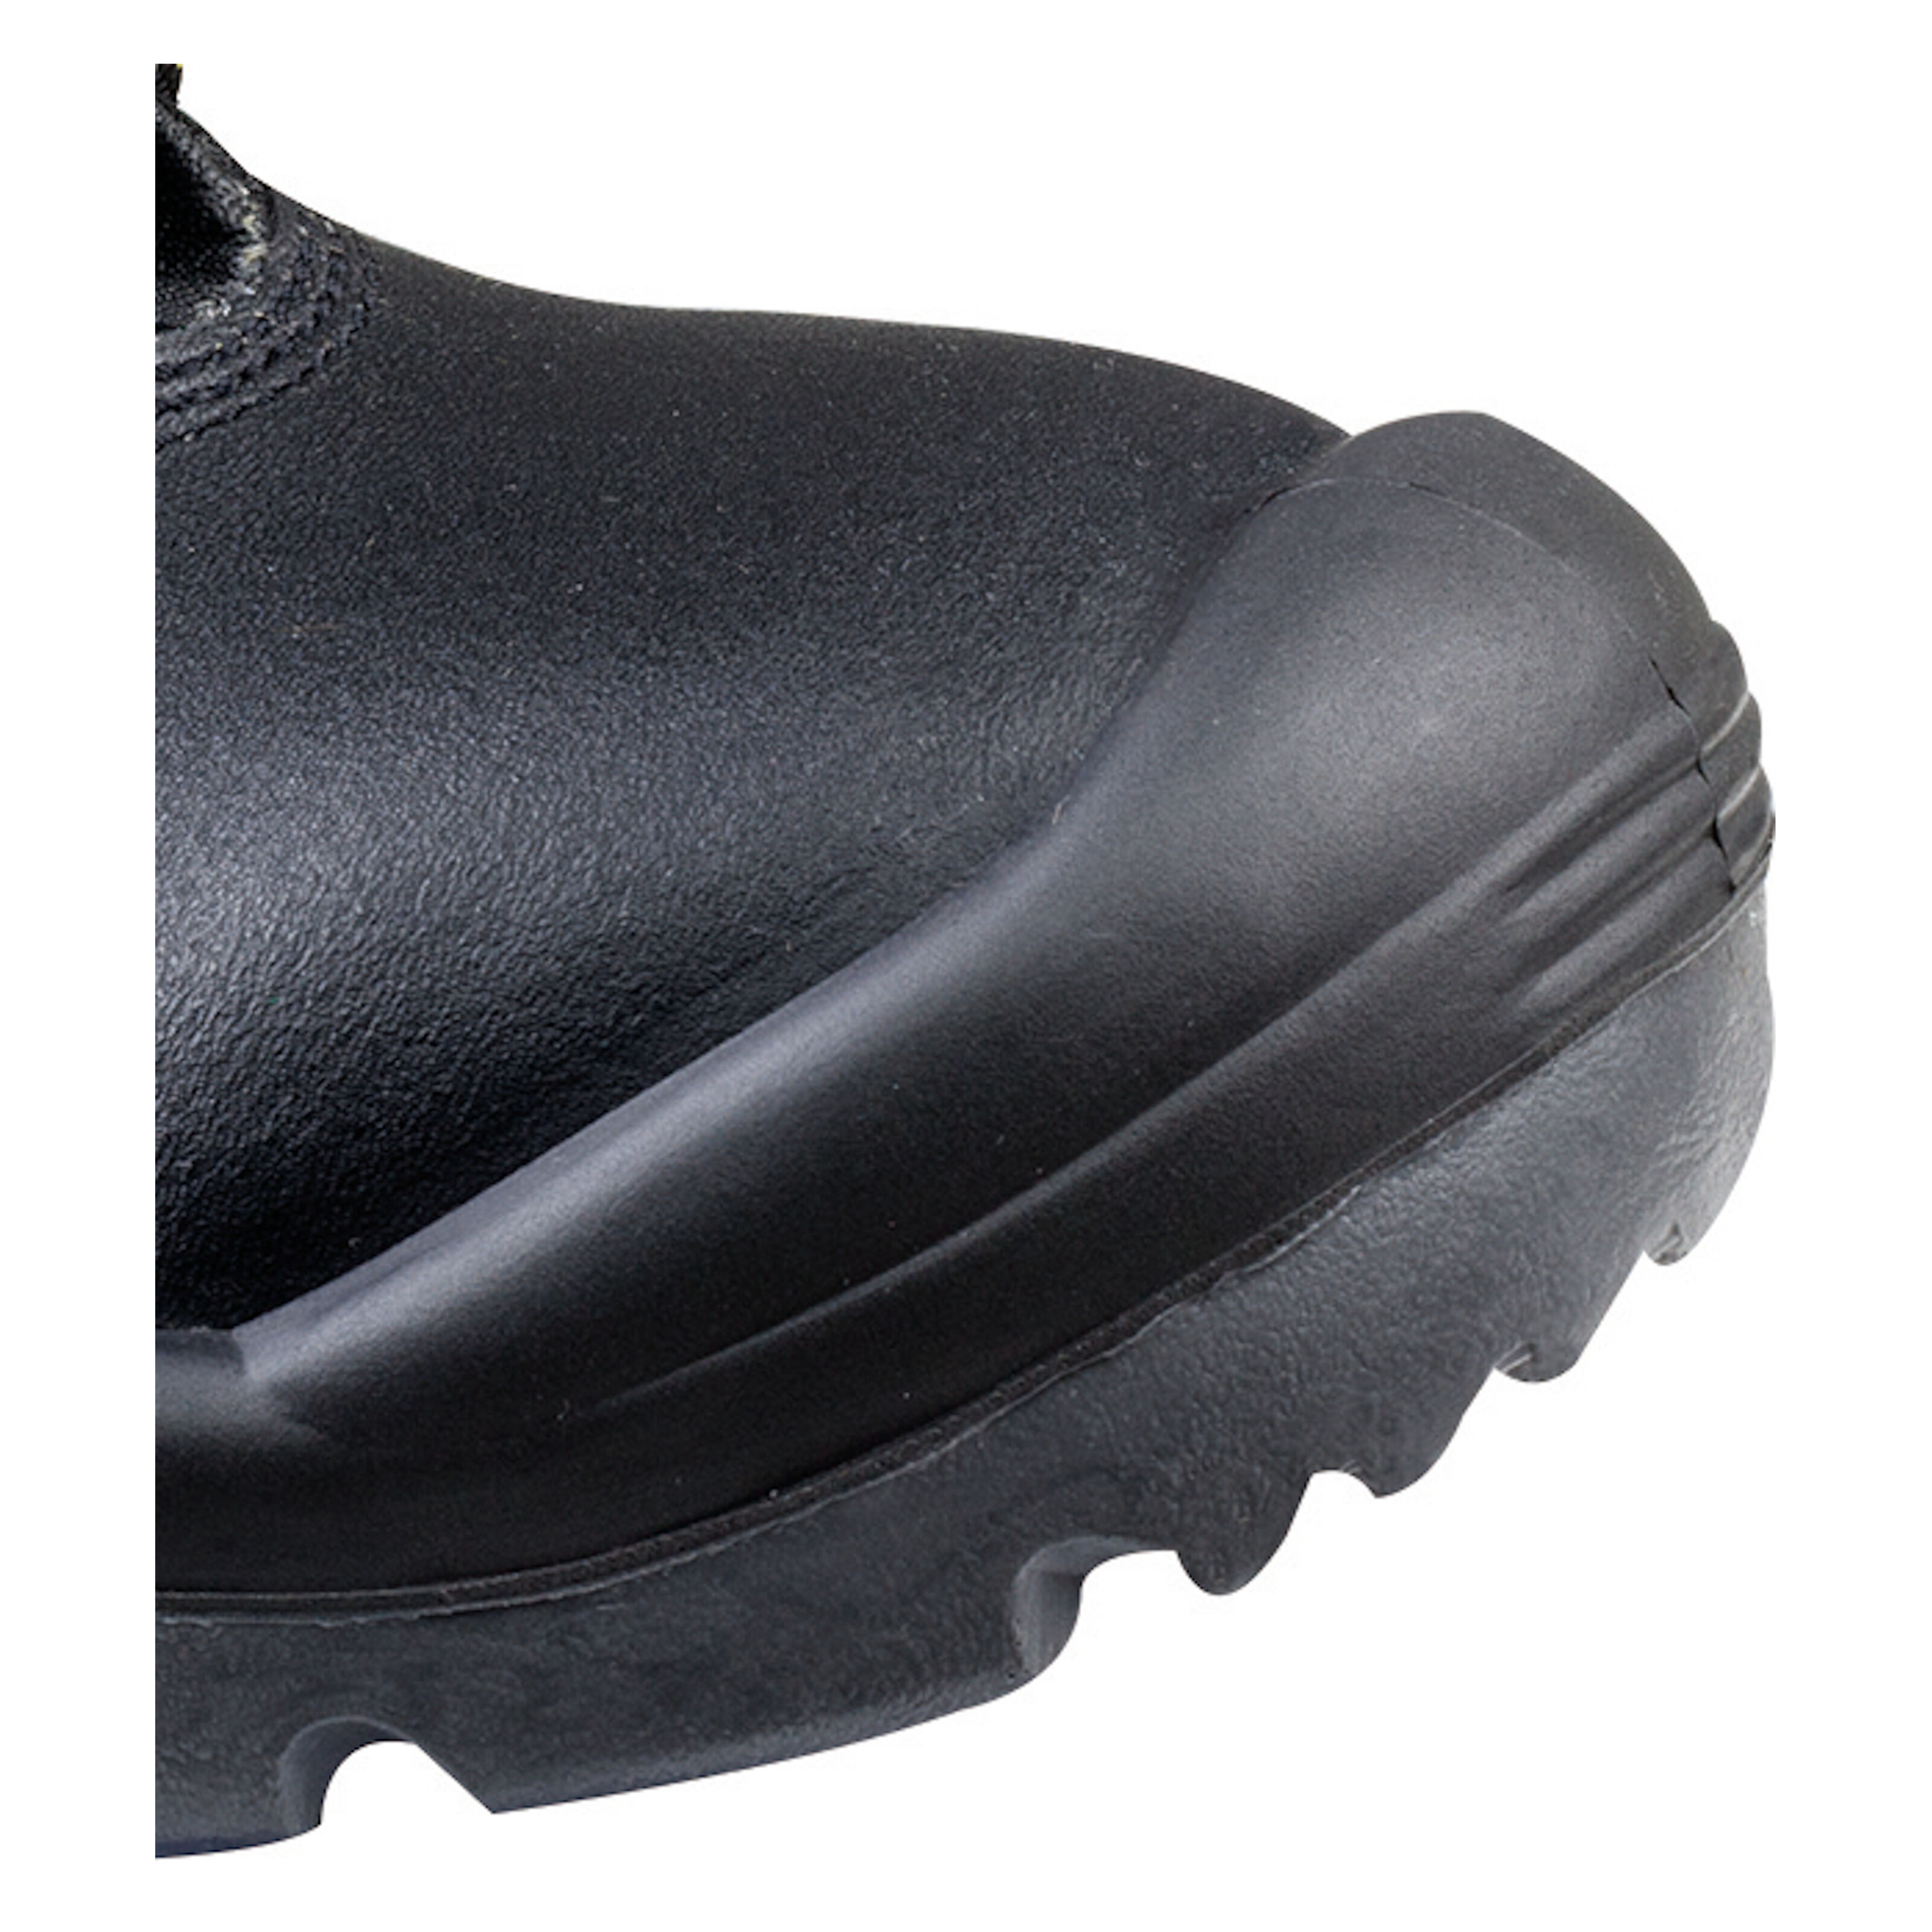 Delta Plus Santana Noir Composite Toe wide fit Bottes de sécurité 100% métal libre Epi 